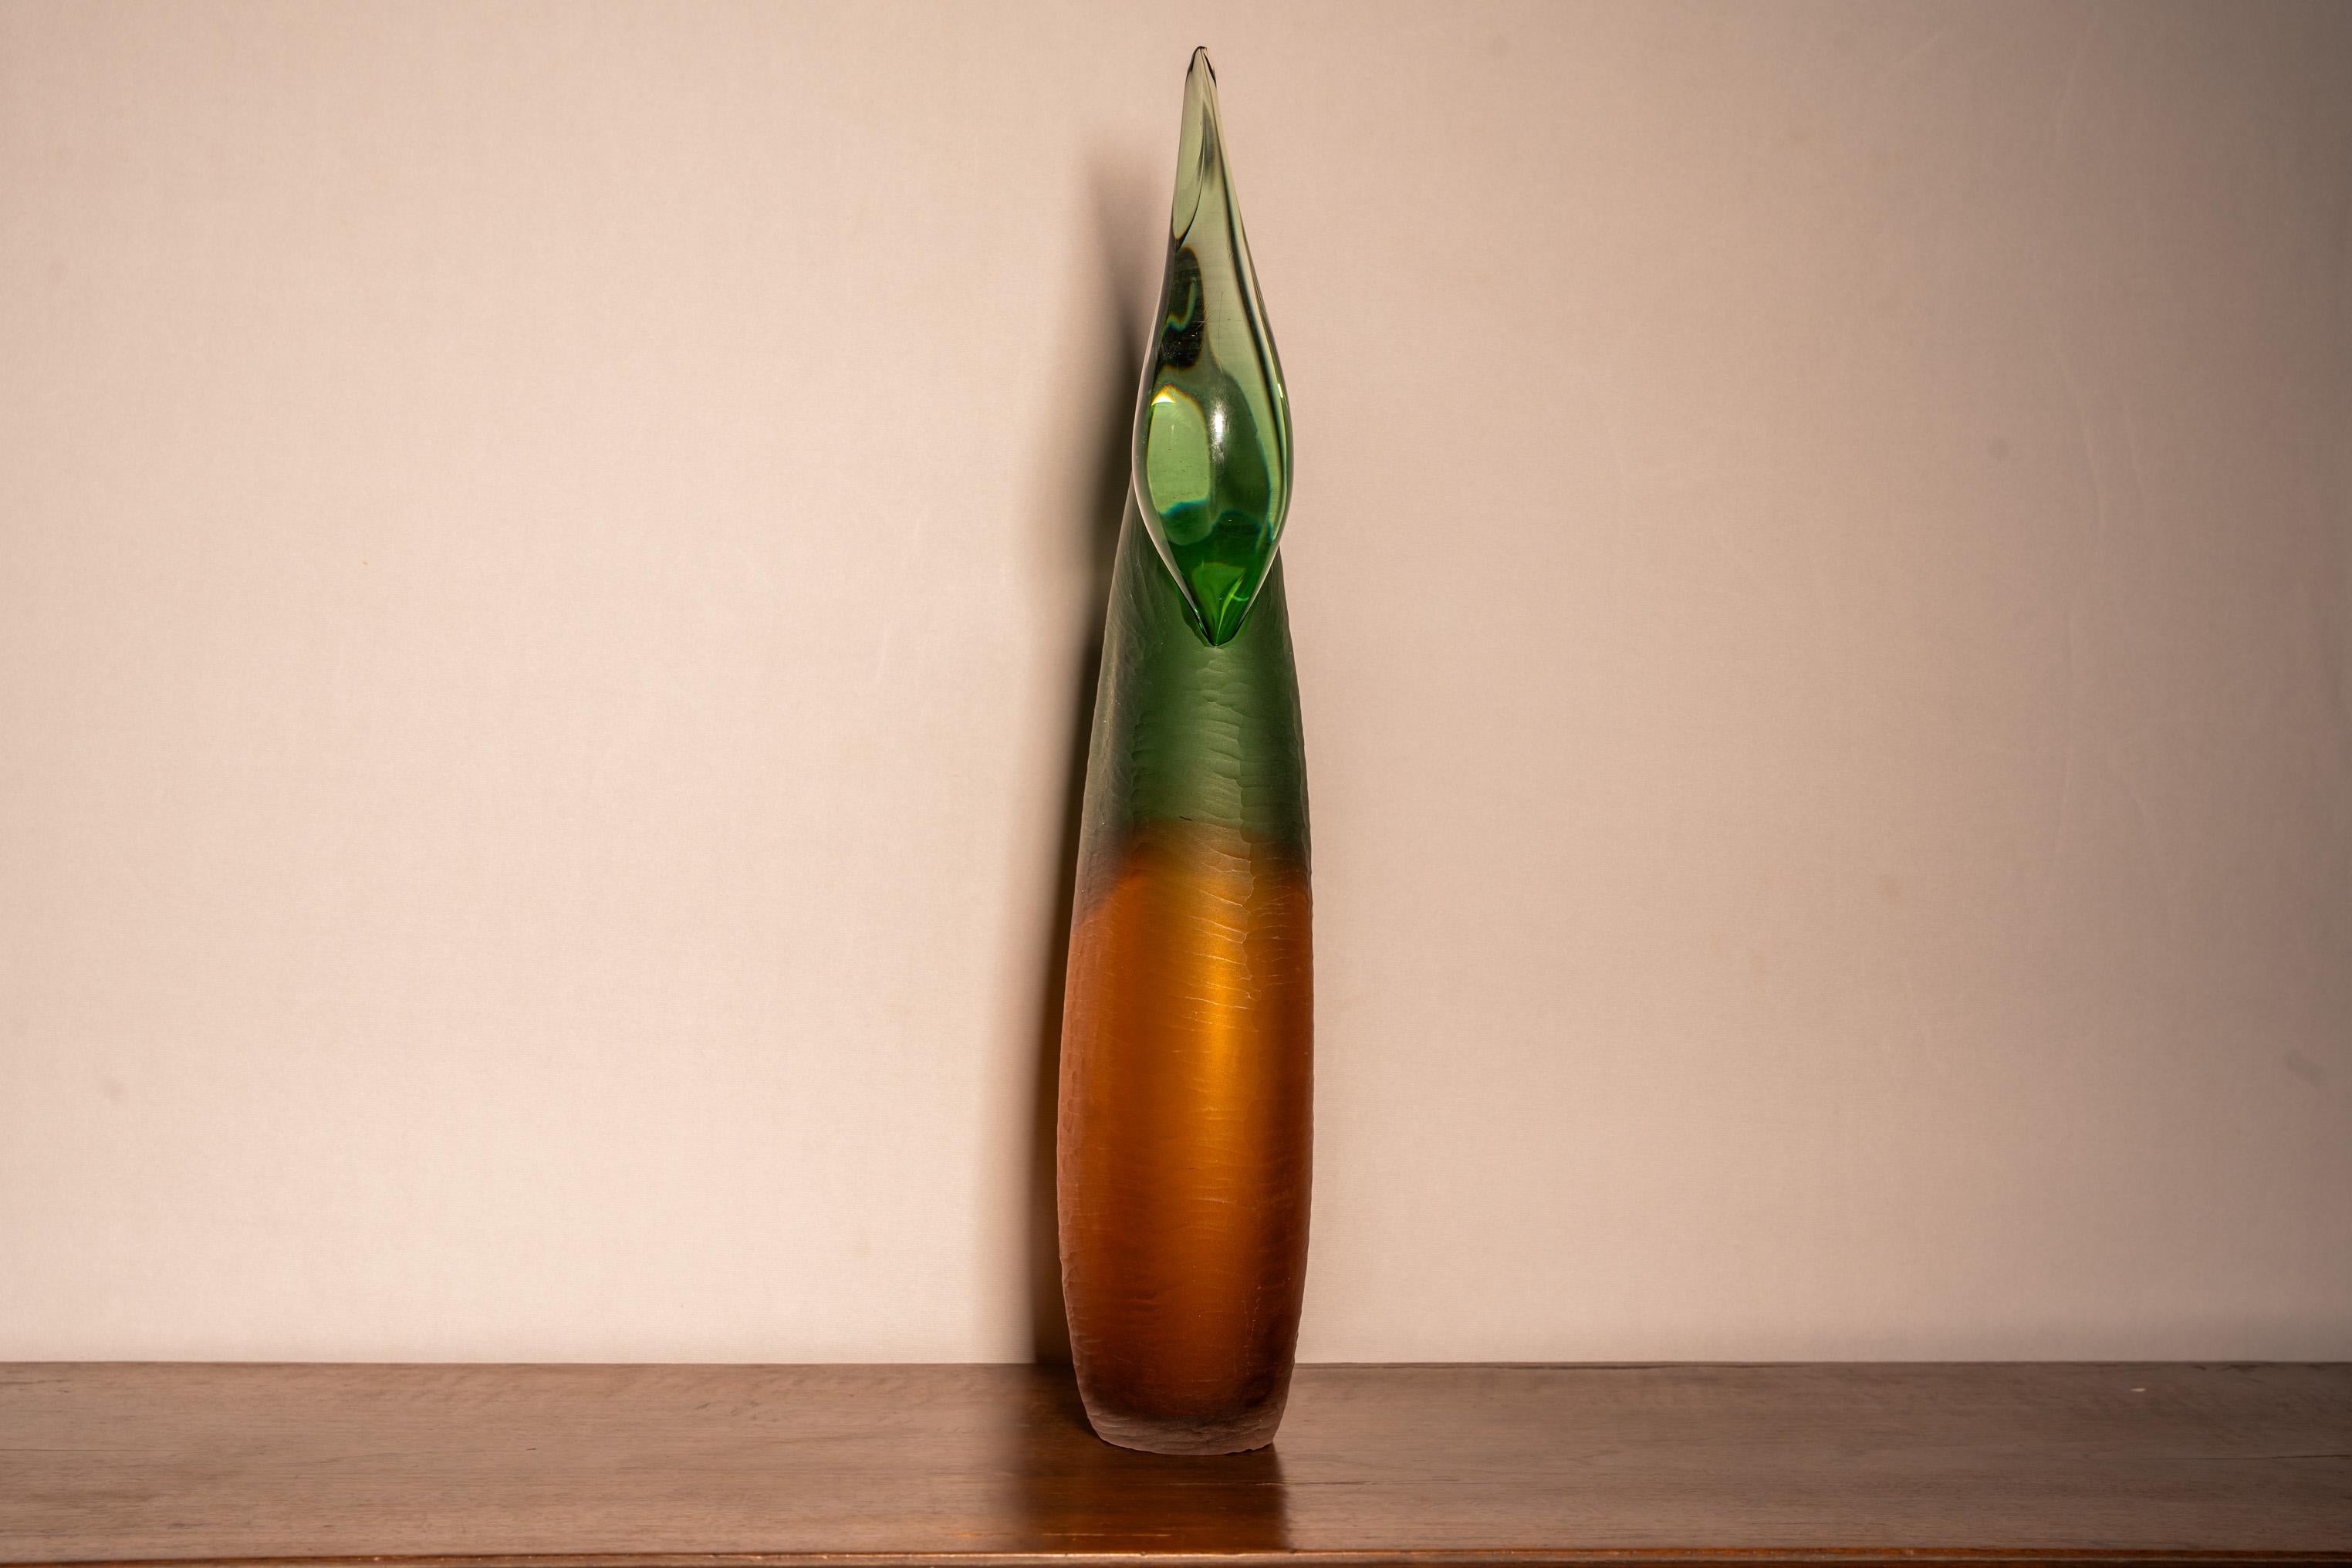 Murano Glass Paolo Crepax vaso ad incalmo in vetro di Murano For Sale